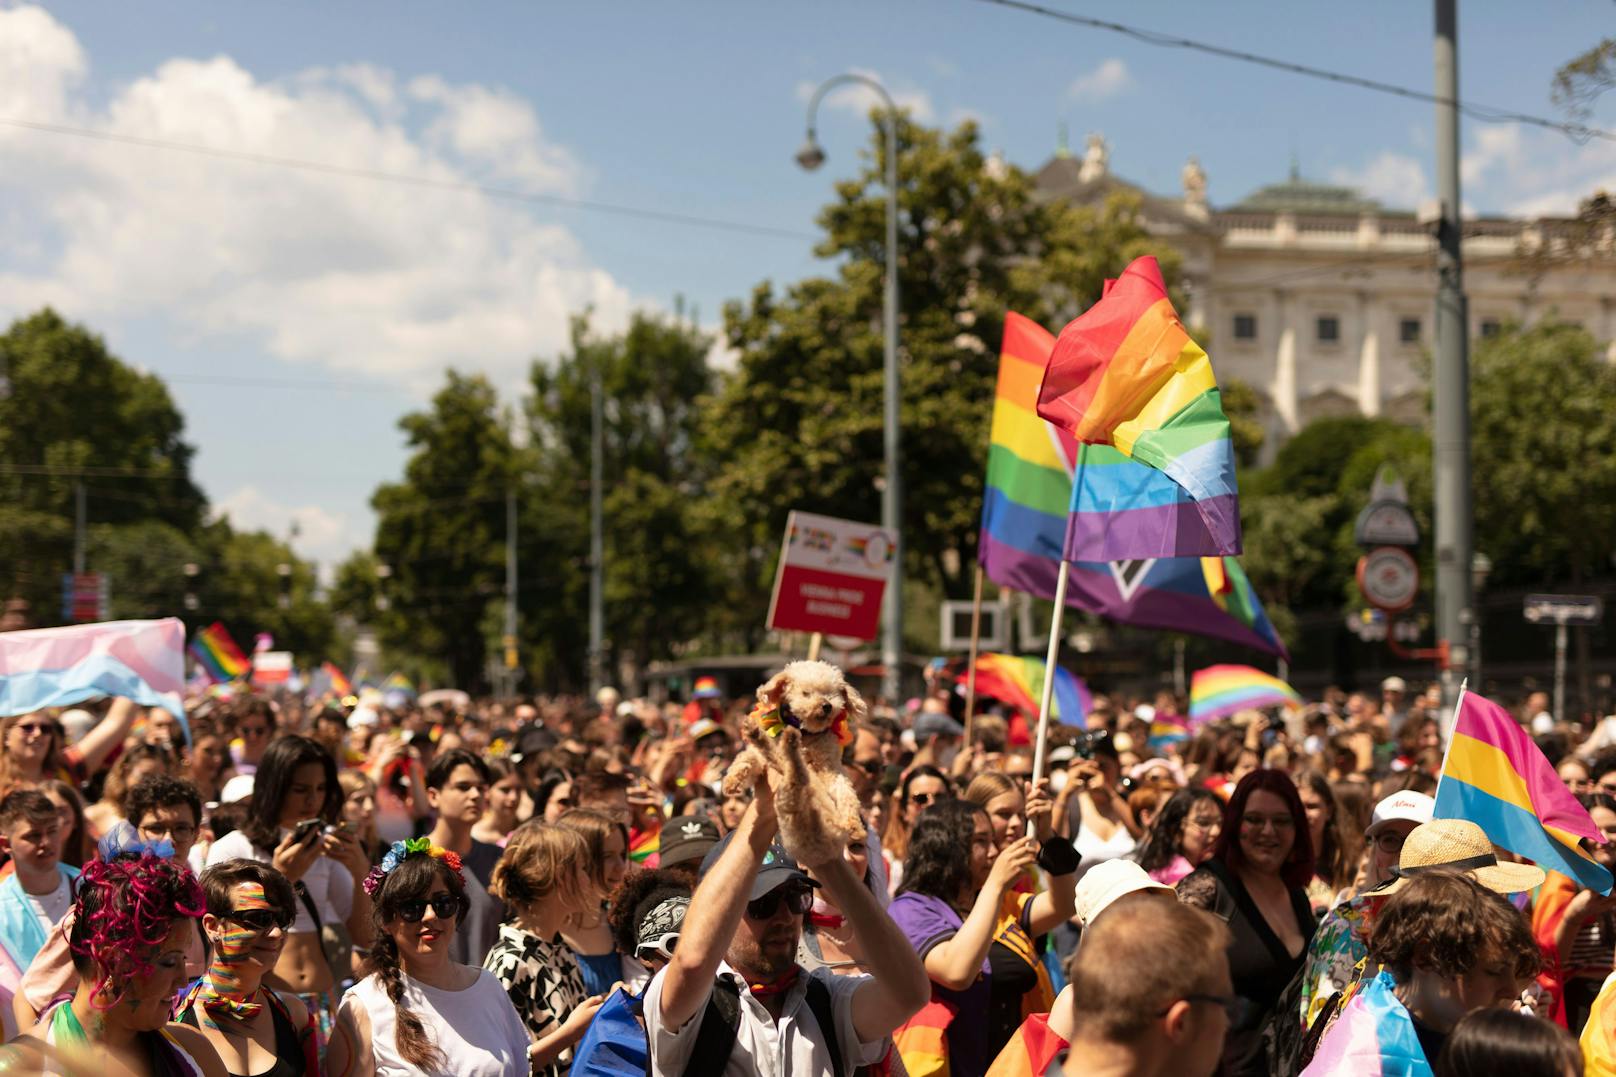 Die Vienna Pride ging am Samstag über die Bühne – erst danach gab es Infos über einen vereitelten Anschlag.